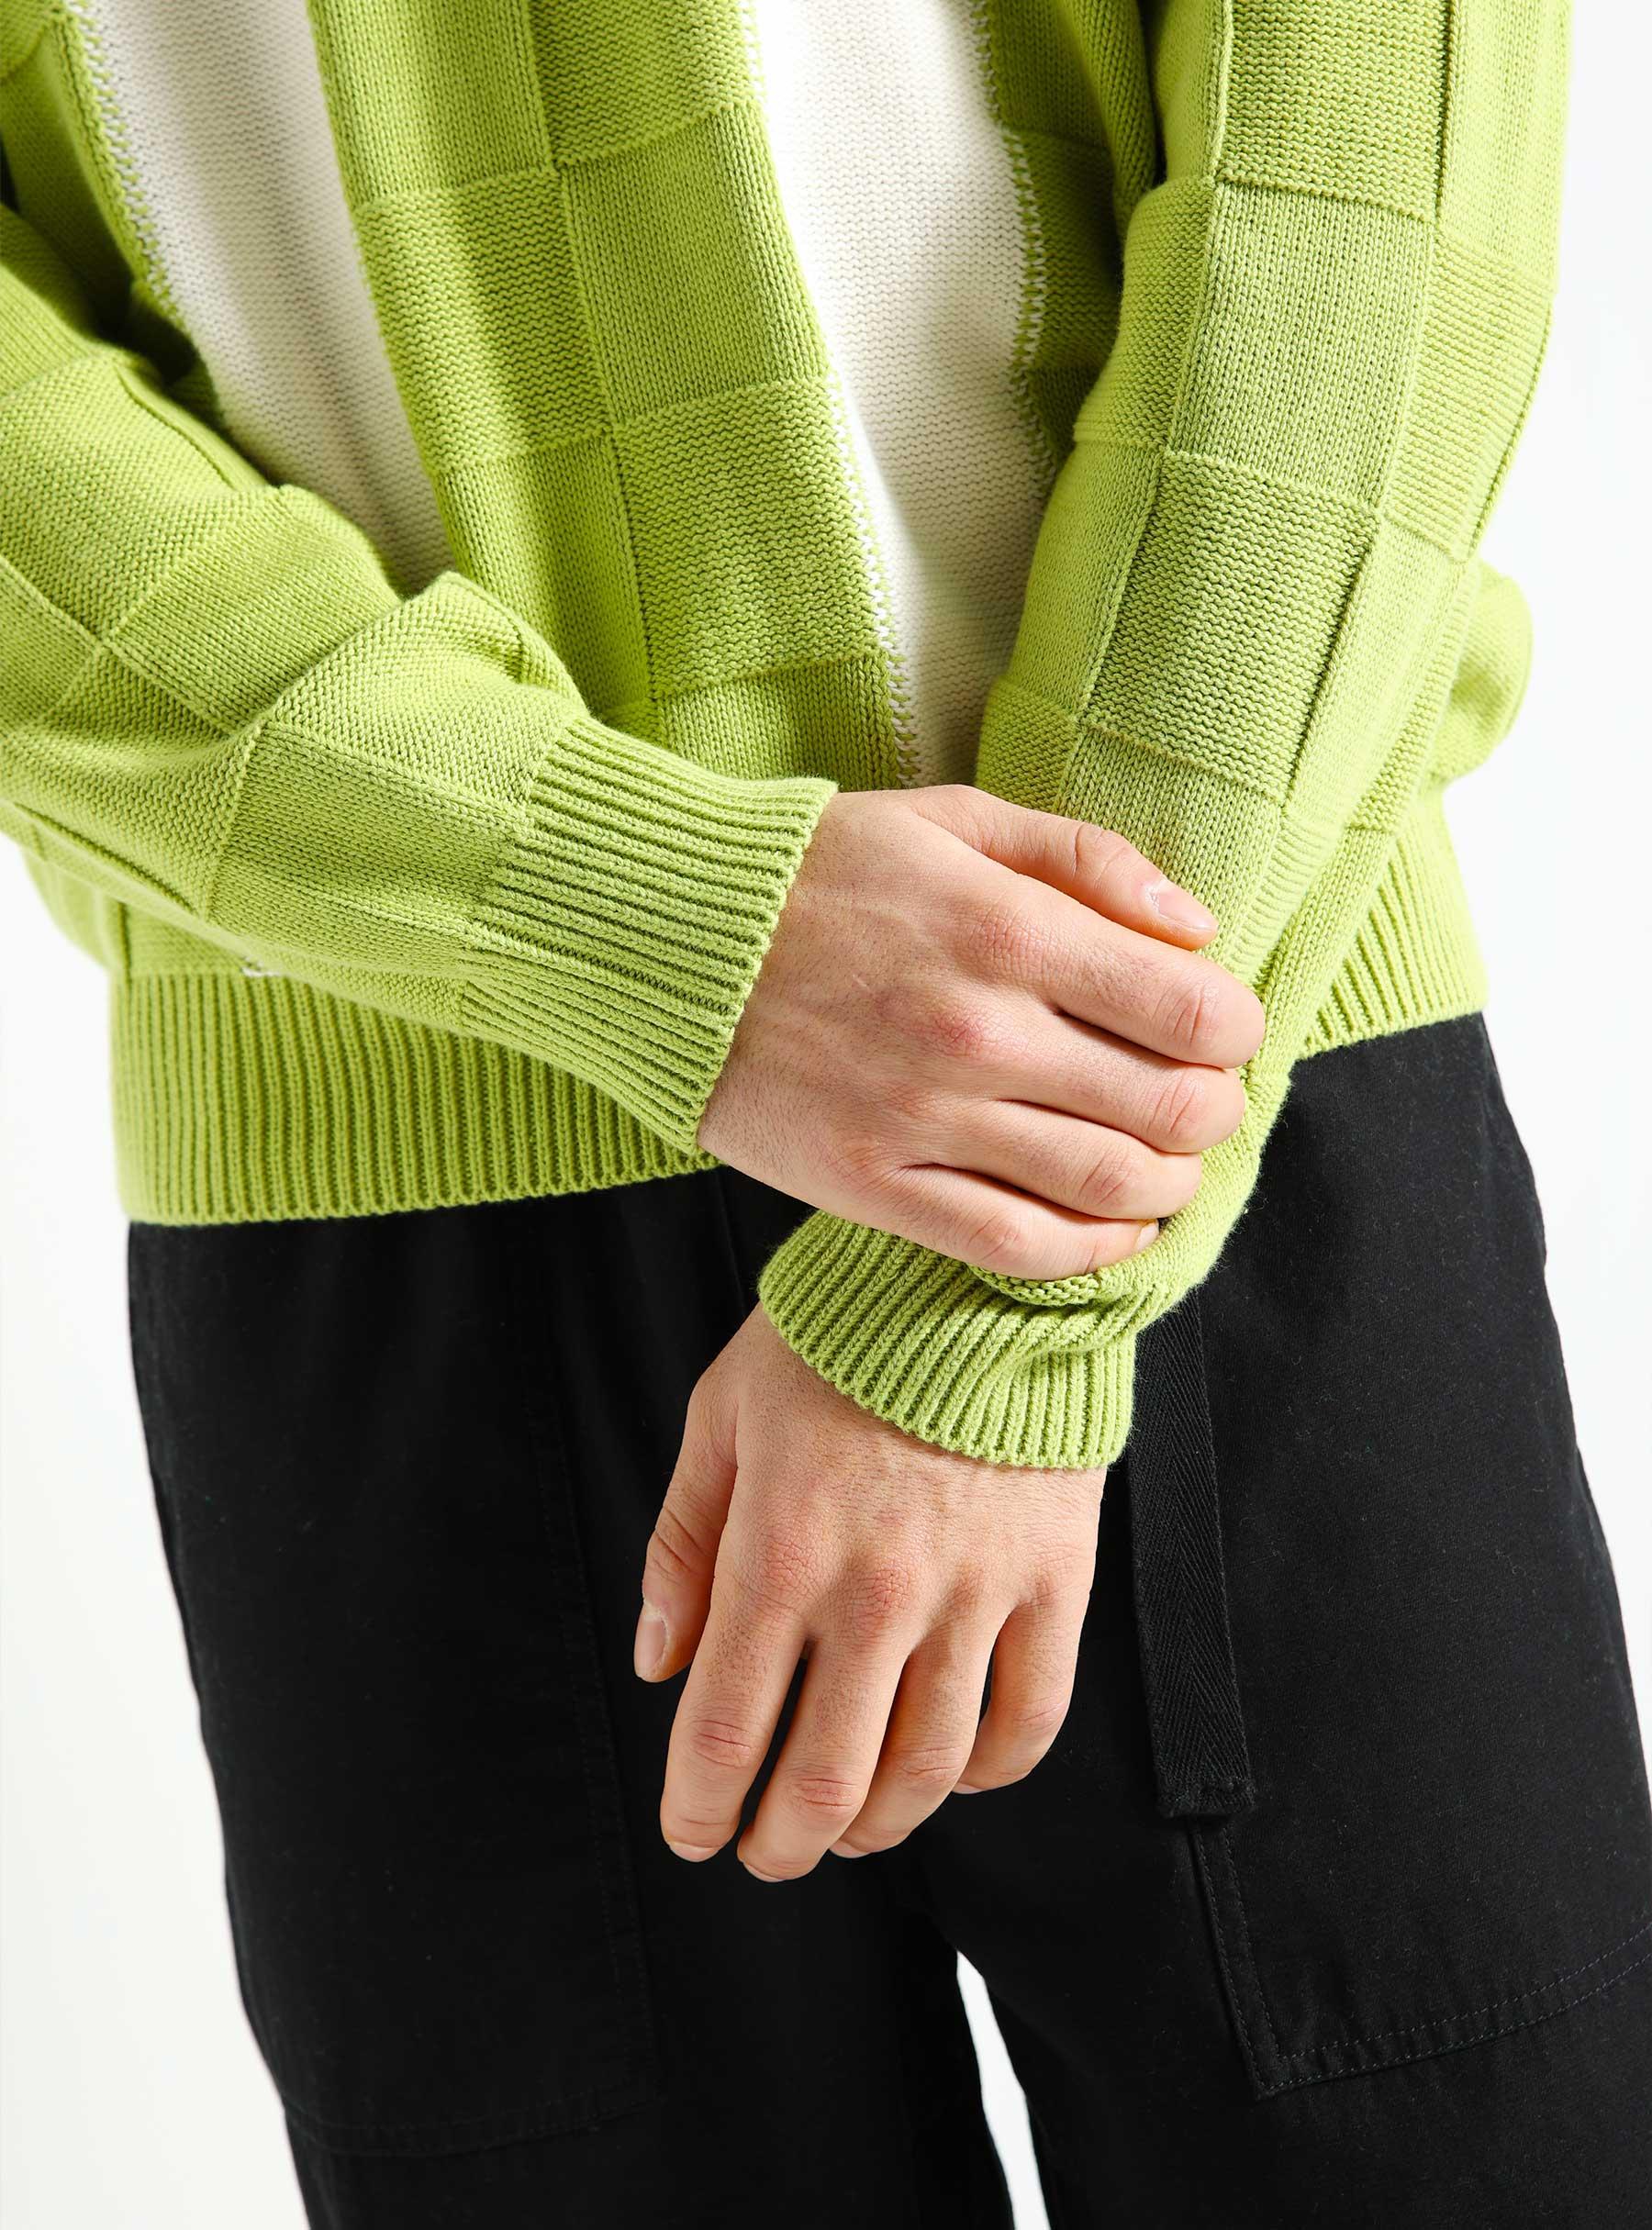 Albert Polo Sweater Tarragon Green Multi 151000081-TAR